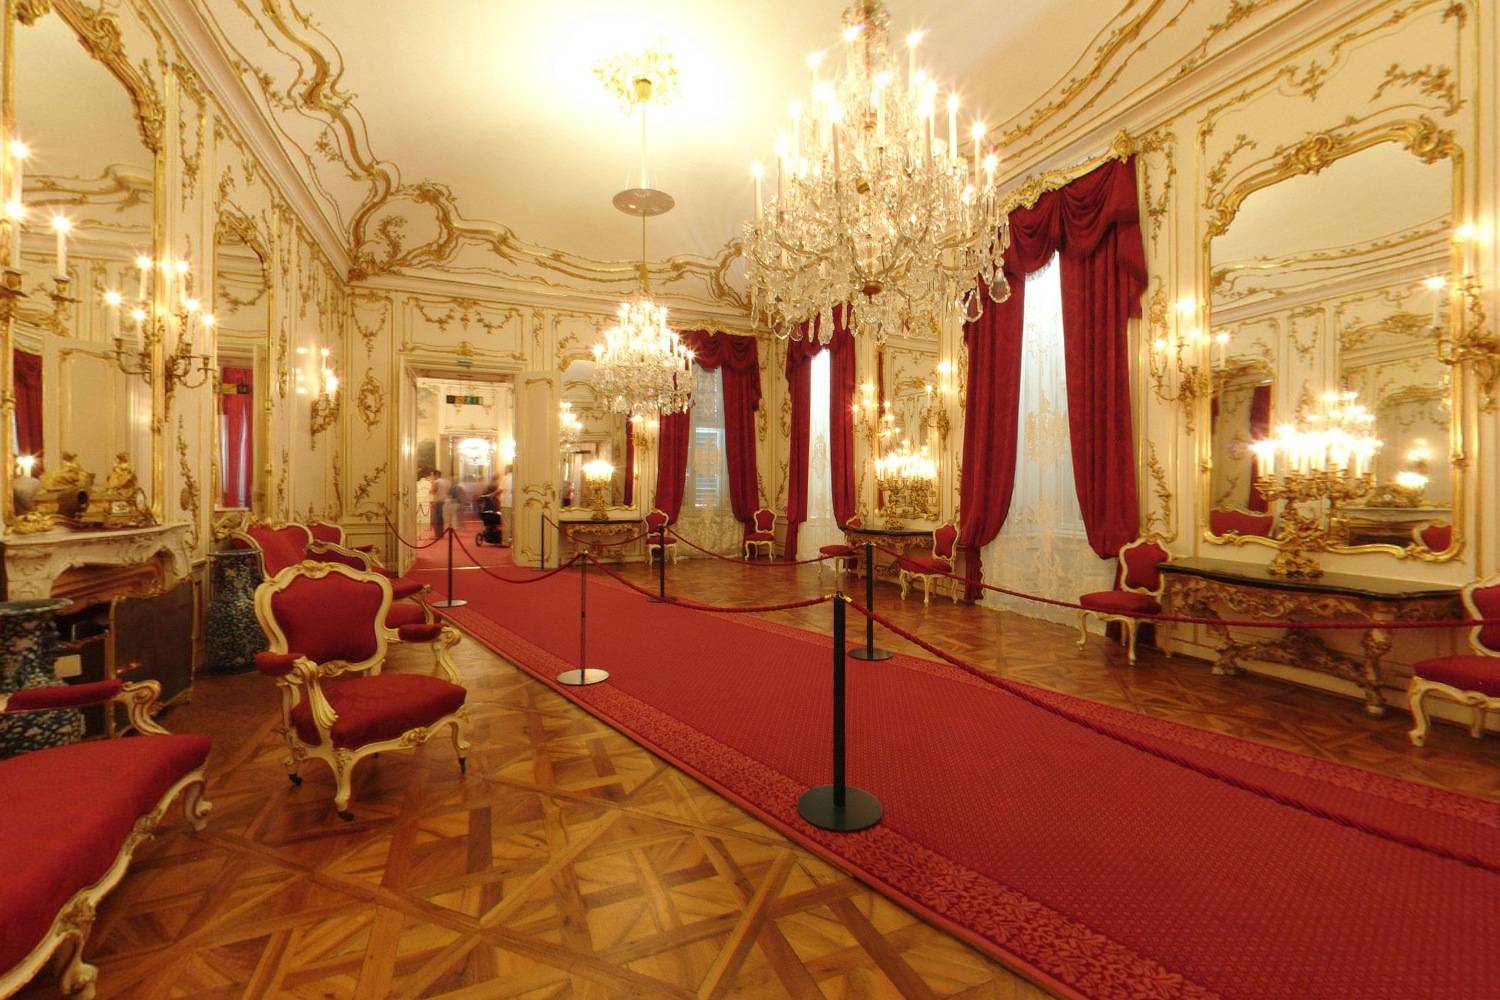 欧洲宫殿内景图片